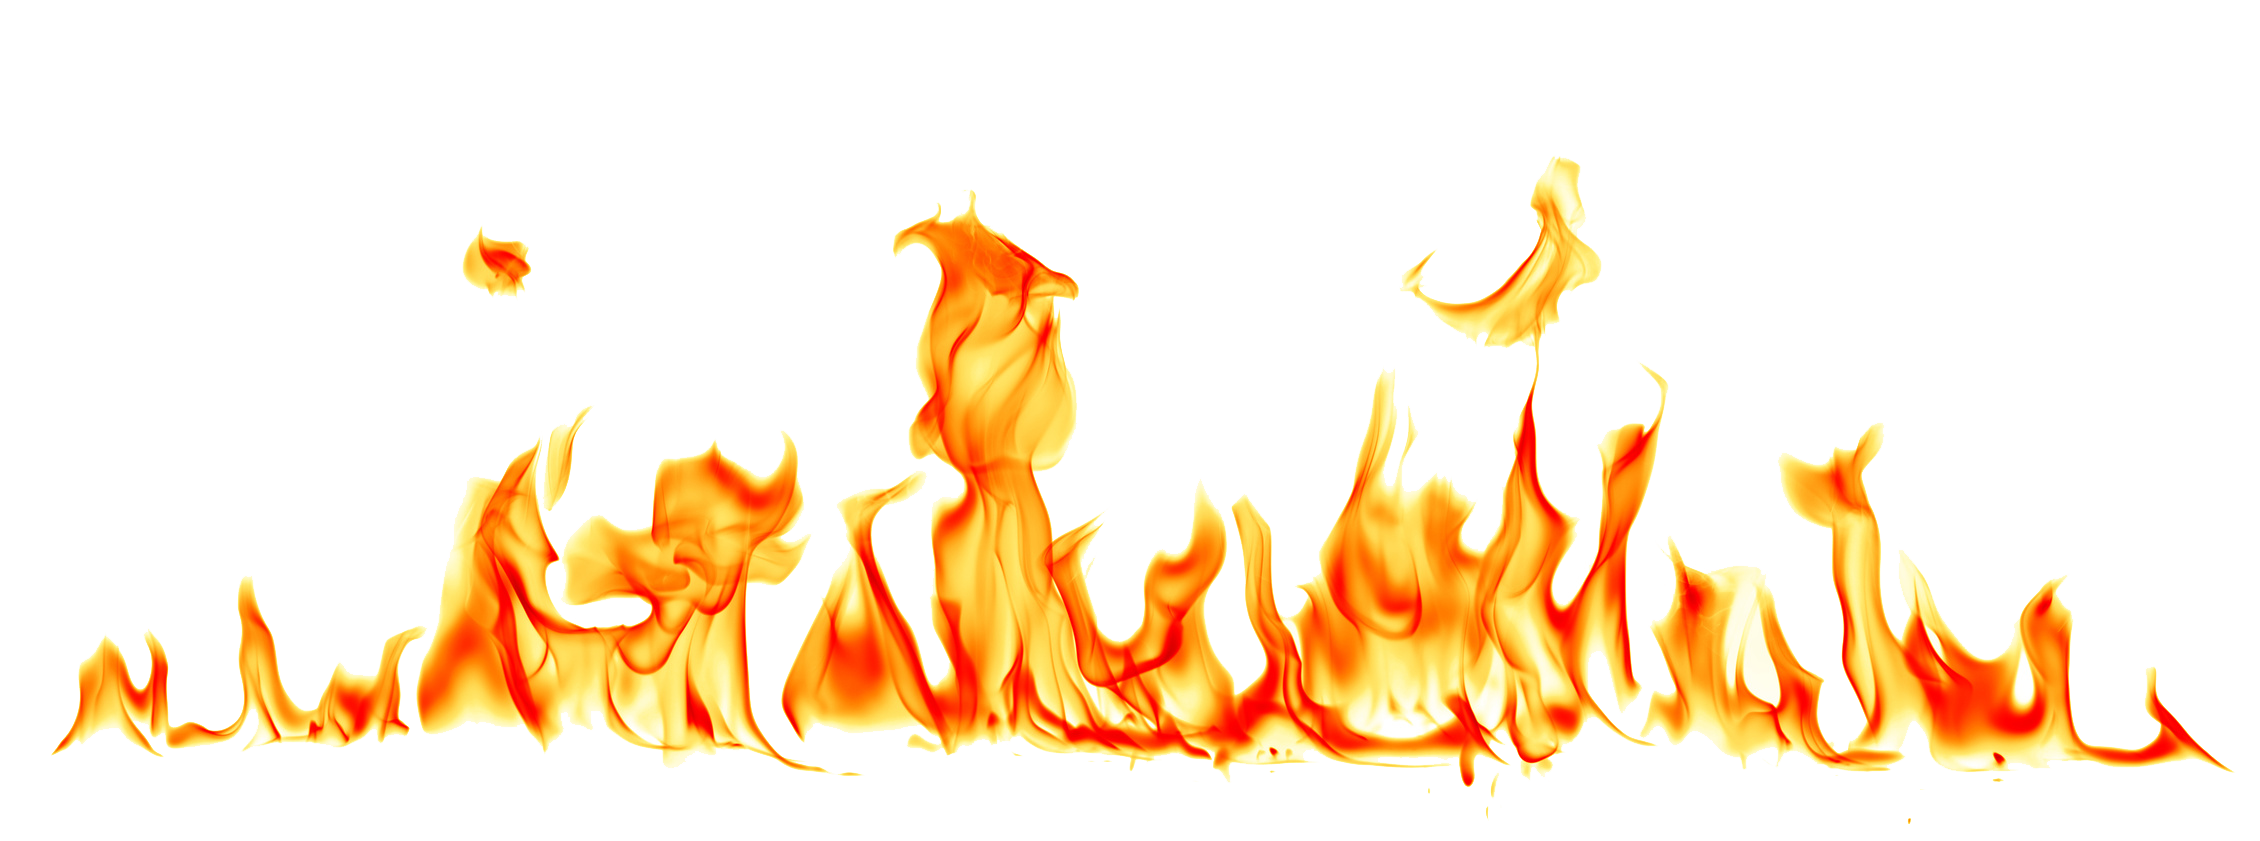 Fire Flame PNG Gambar berkualitas tinggi